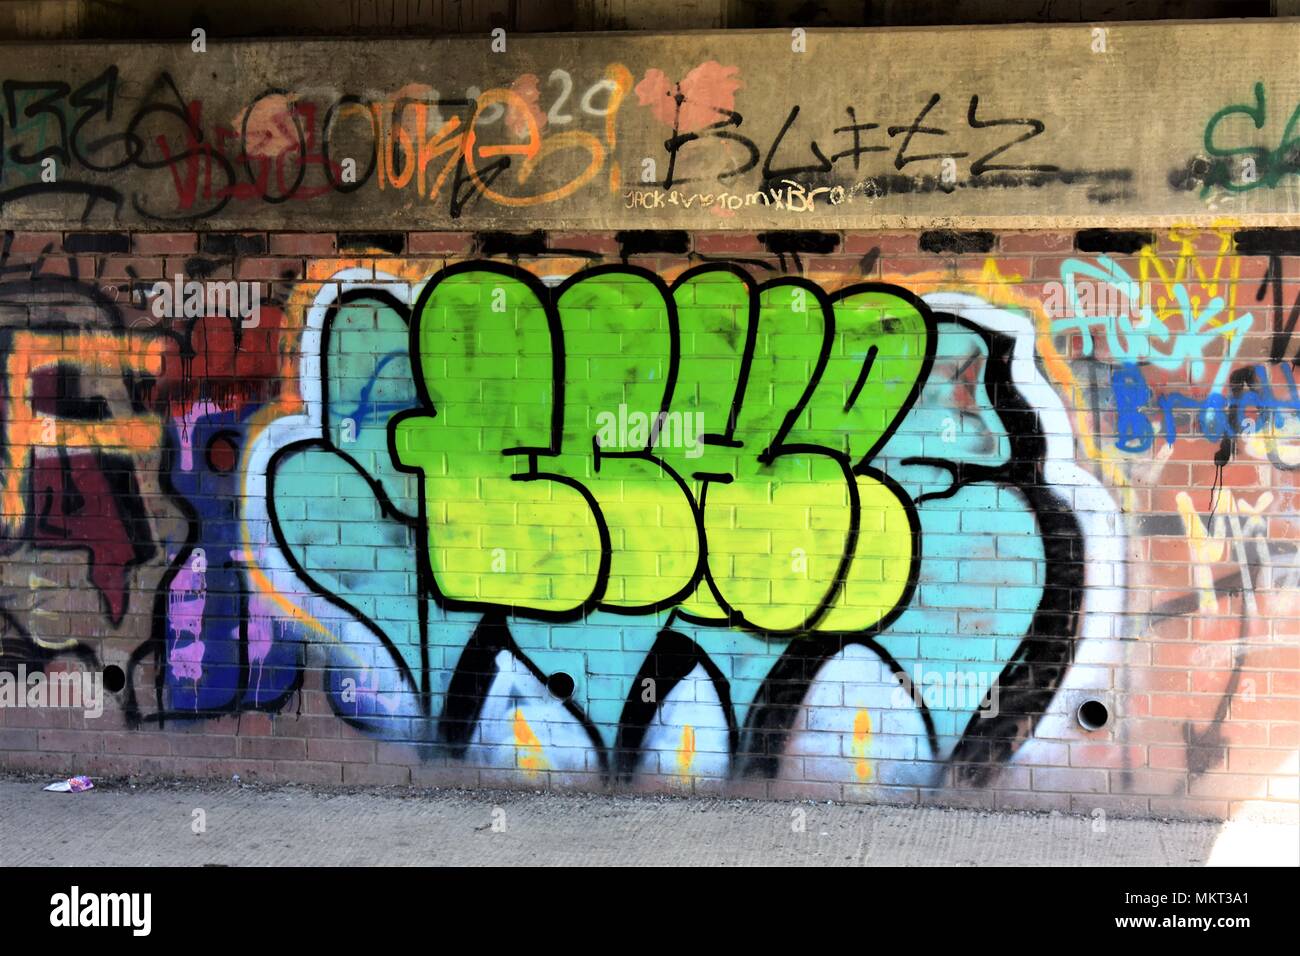 Kunst oder Graffiti Wahrnehmung ist alles, brauchen wir mehr oder weniger, Kreative oder destruktiv. Stockfoto